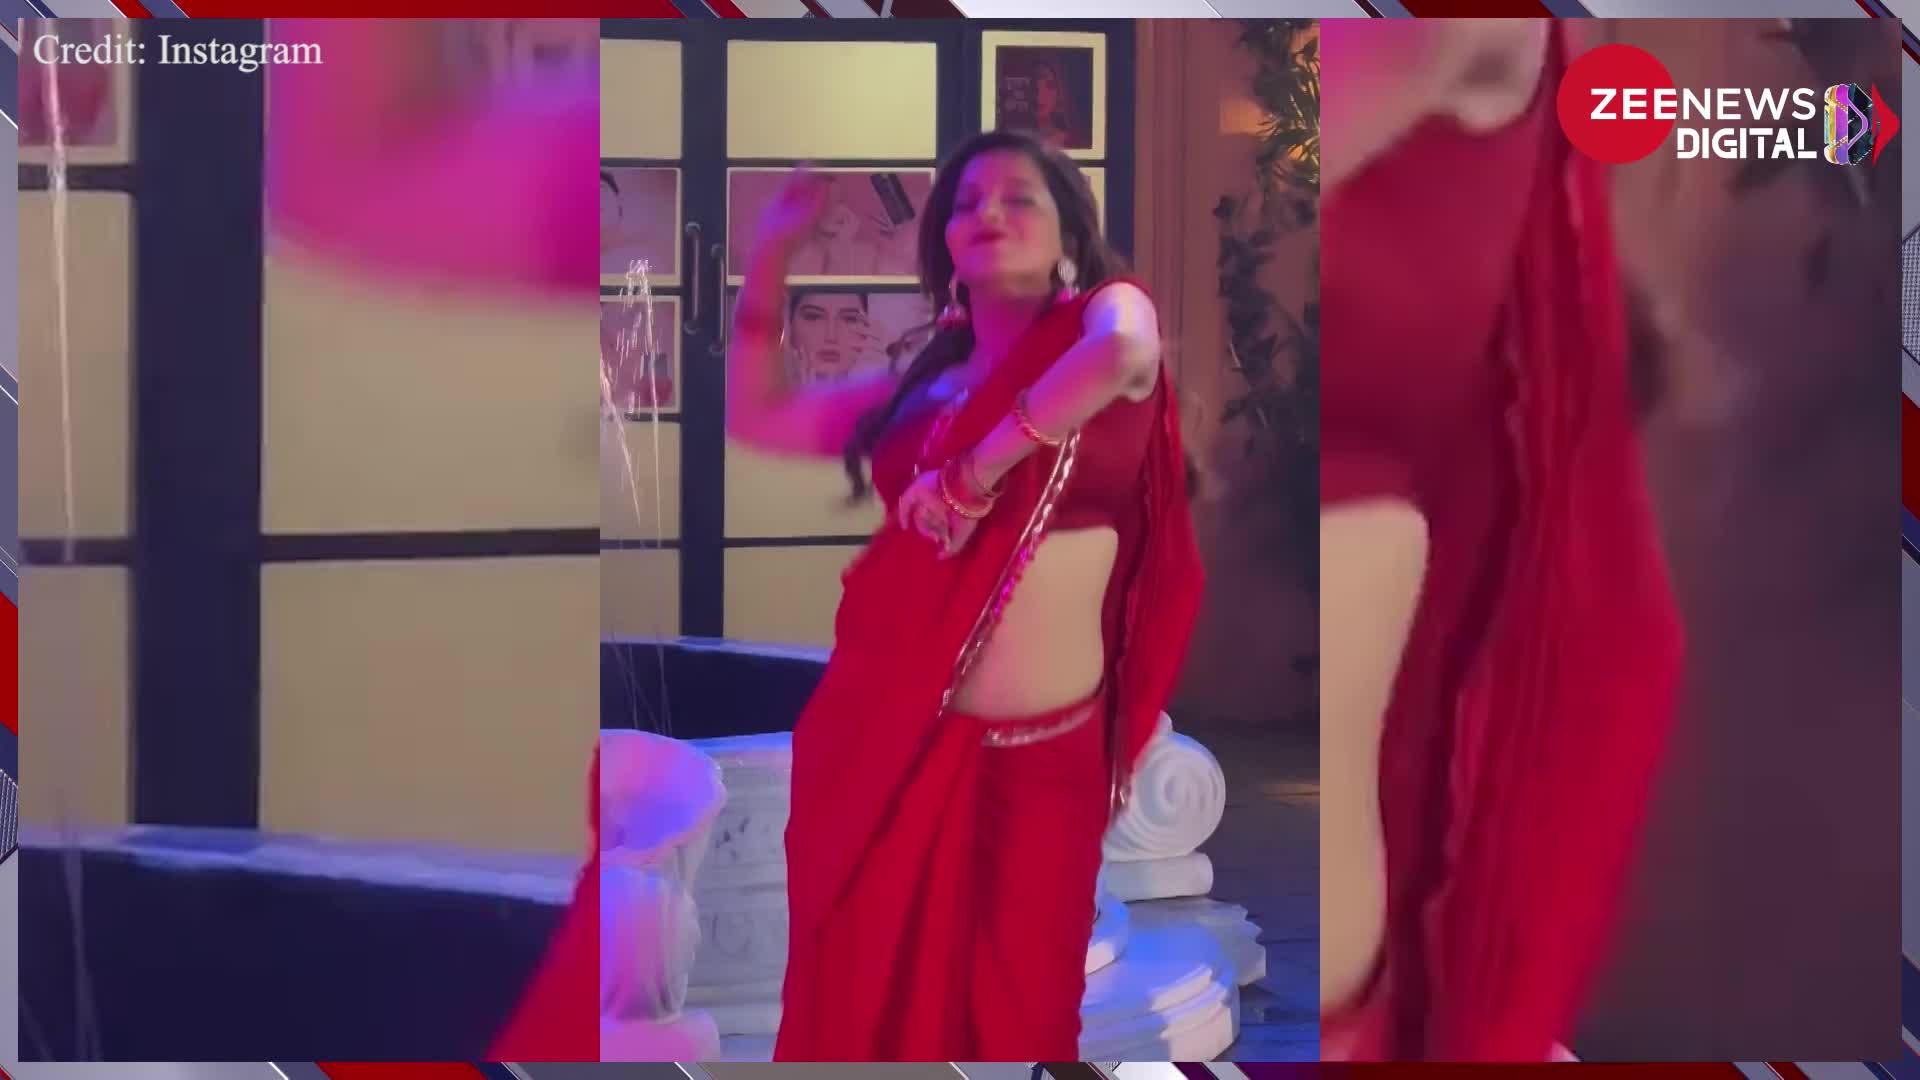 Monalisa Hot Dance: भोजपुरी एक्ट्रेस की अदाओं ने उड़ाए फैंस के होश, लाला साड़ी पहन धड़काए लोगों के दिल